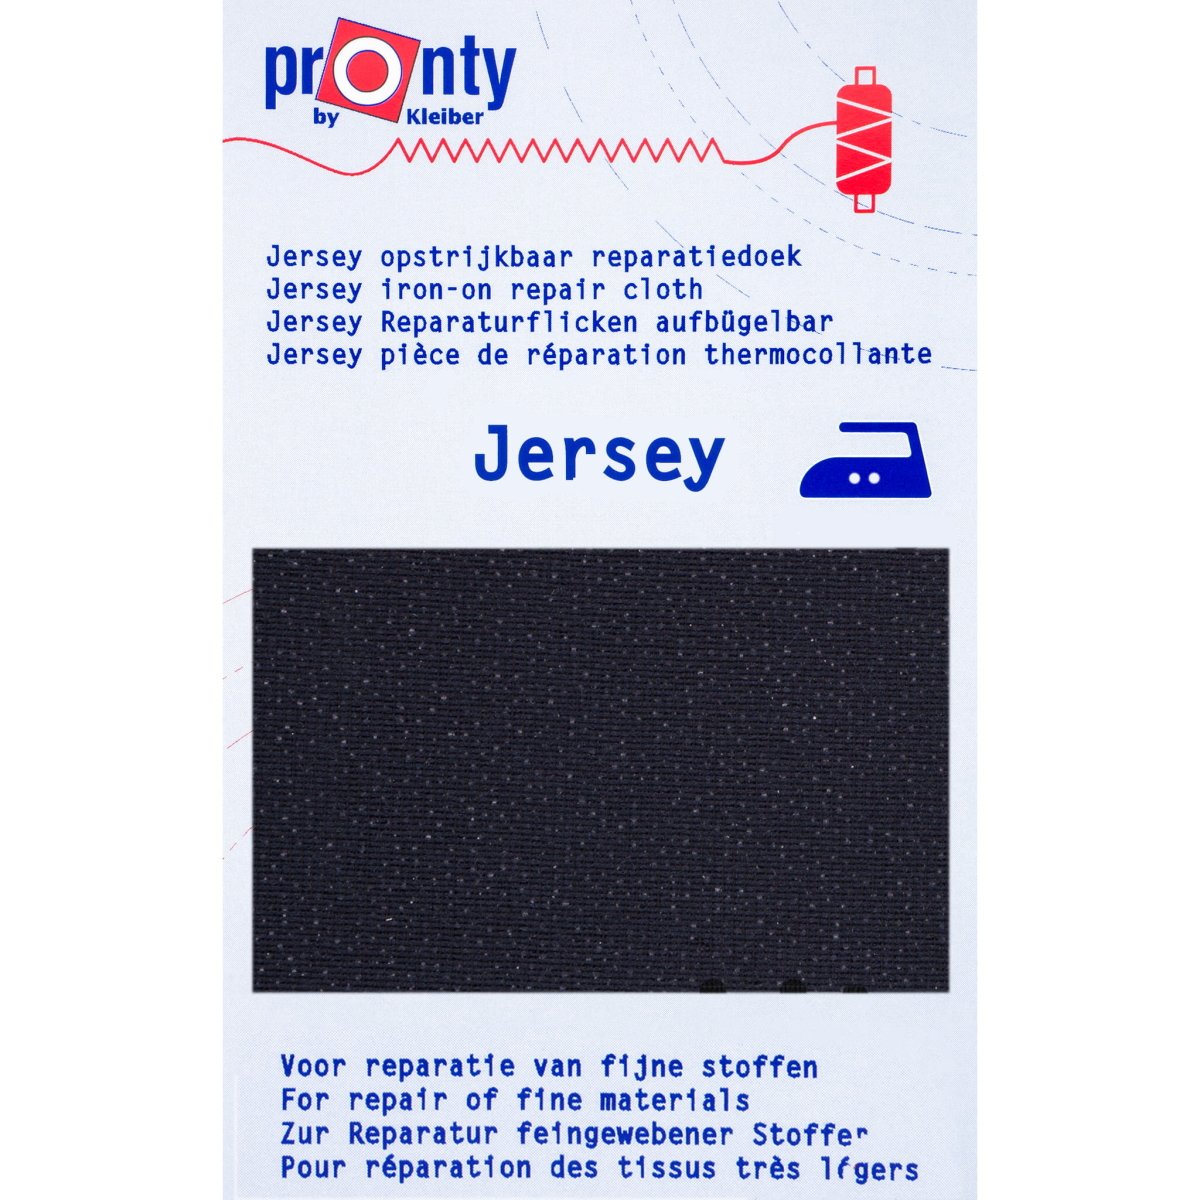 Reparatiedoek Pronty Jersey voor rekbare stoffen 12x45cm Repraratiedoek RPD-PRONTY-JERSEY-MARINE 8714772095011 - Fourniturenkraam.nl